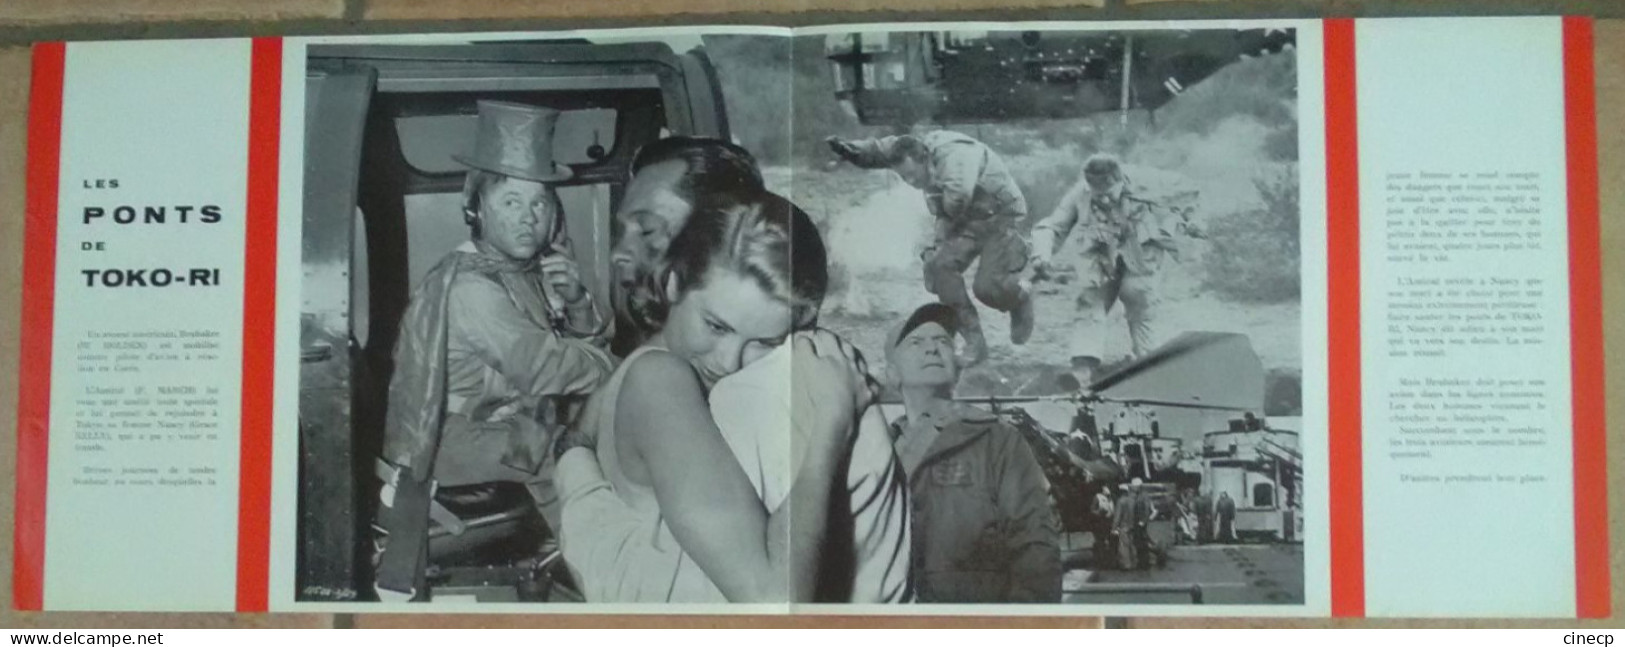 SYNOPSIS Publicitaire 2 Pages FILM LES PONTS DE TOKO-RI GRACE KELLY HOLDEN TBE 1954 Ressorti DESSIN BELINSKY - Publicité Cinématographique